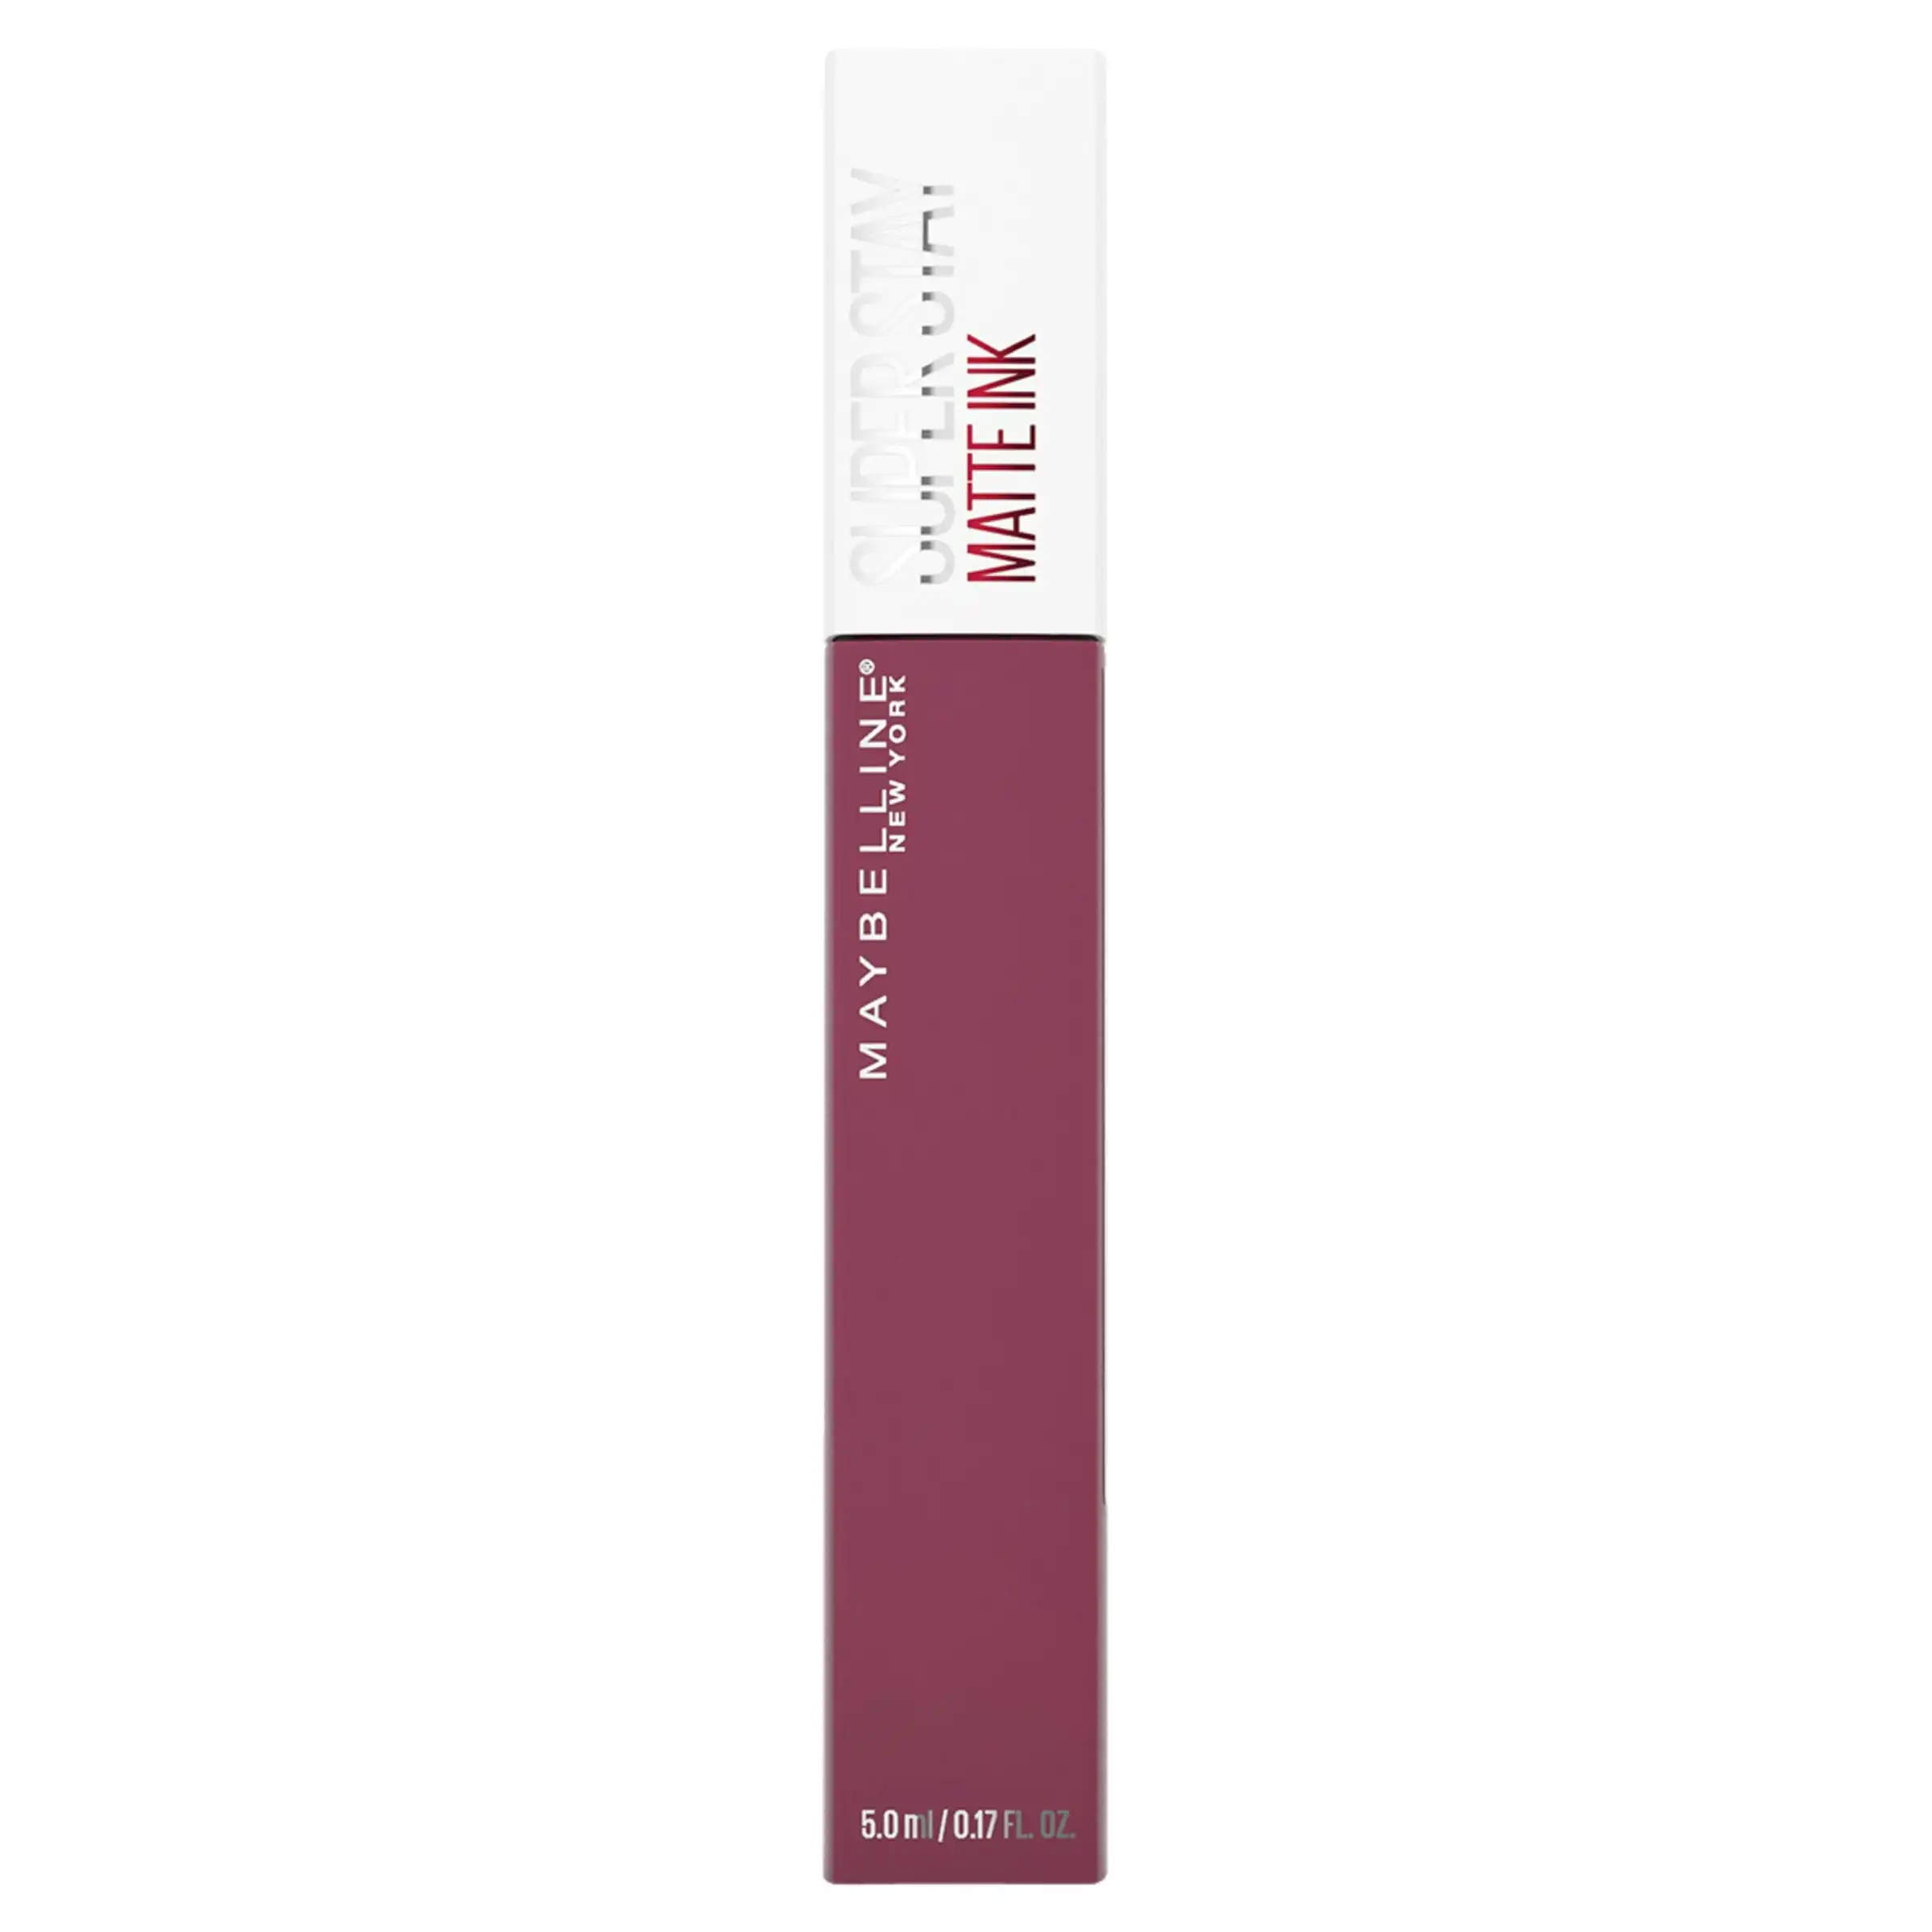 Maybelline SuperStay Matte Ink Longwear Liquid Lipstick - Savant 155